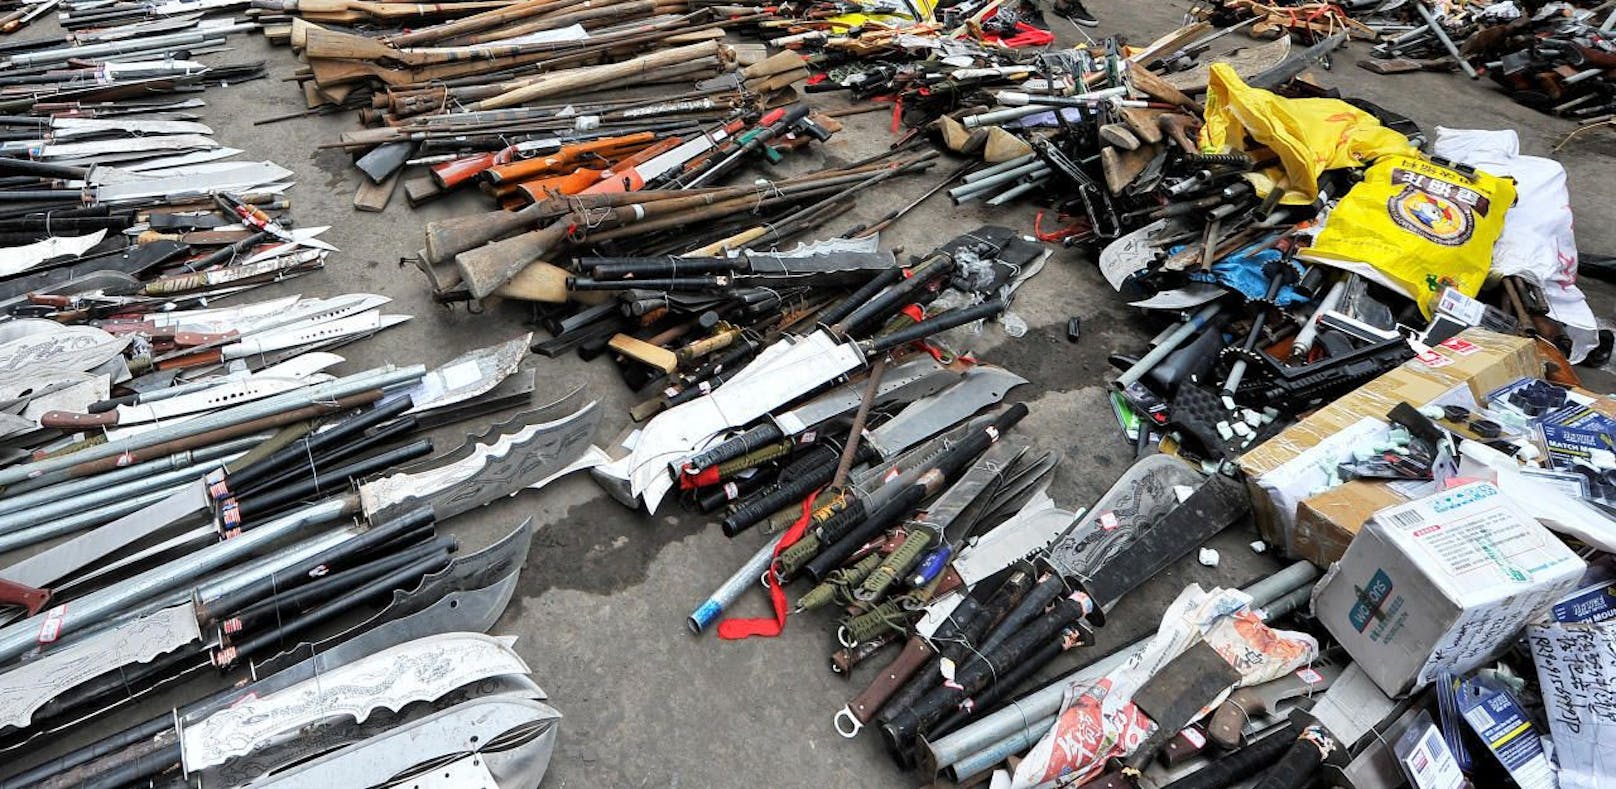 Symbolbild: Illegale Waffen in China, bevor sie in einer Stahlfabrik zerstört werden.